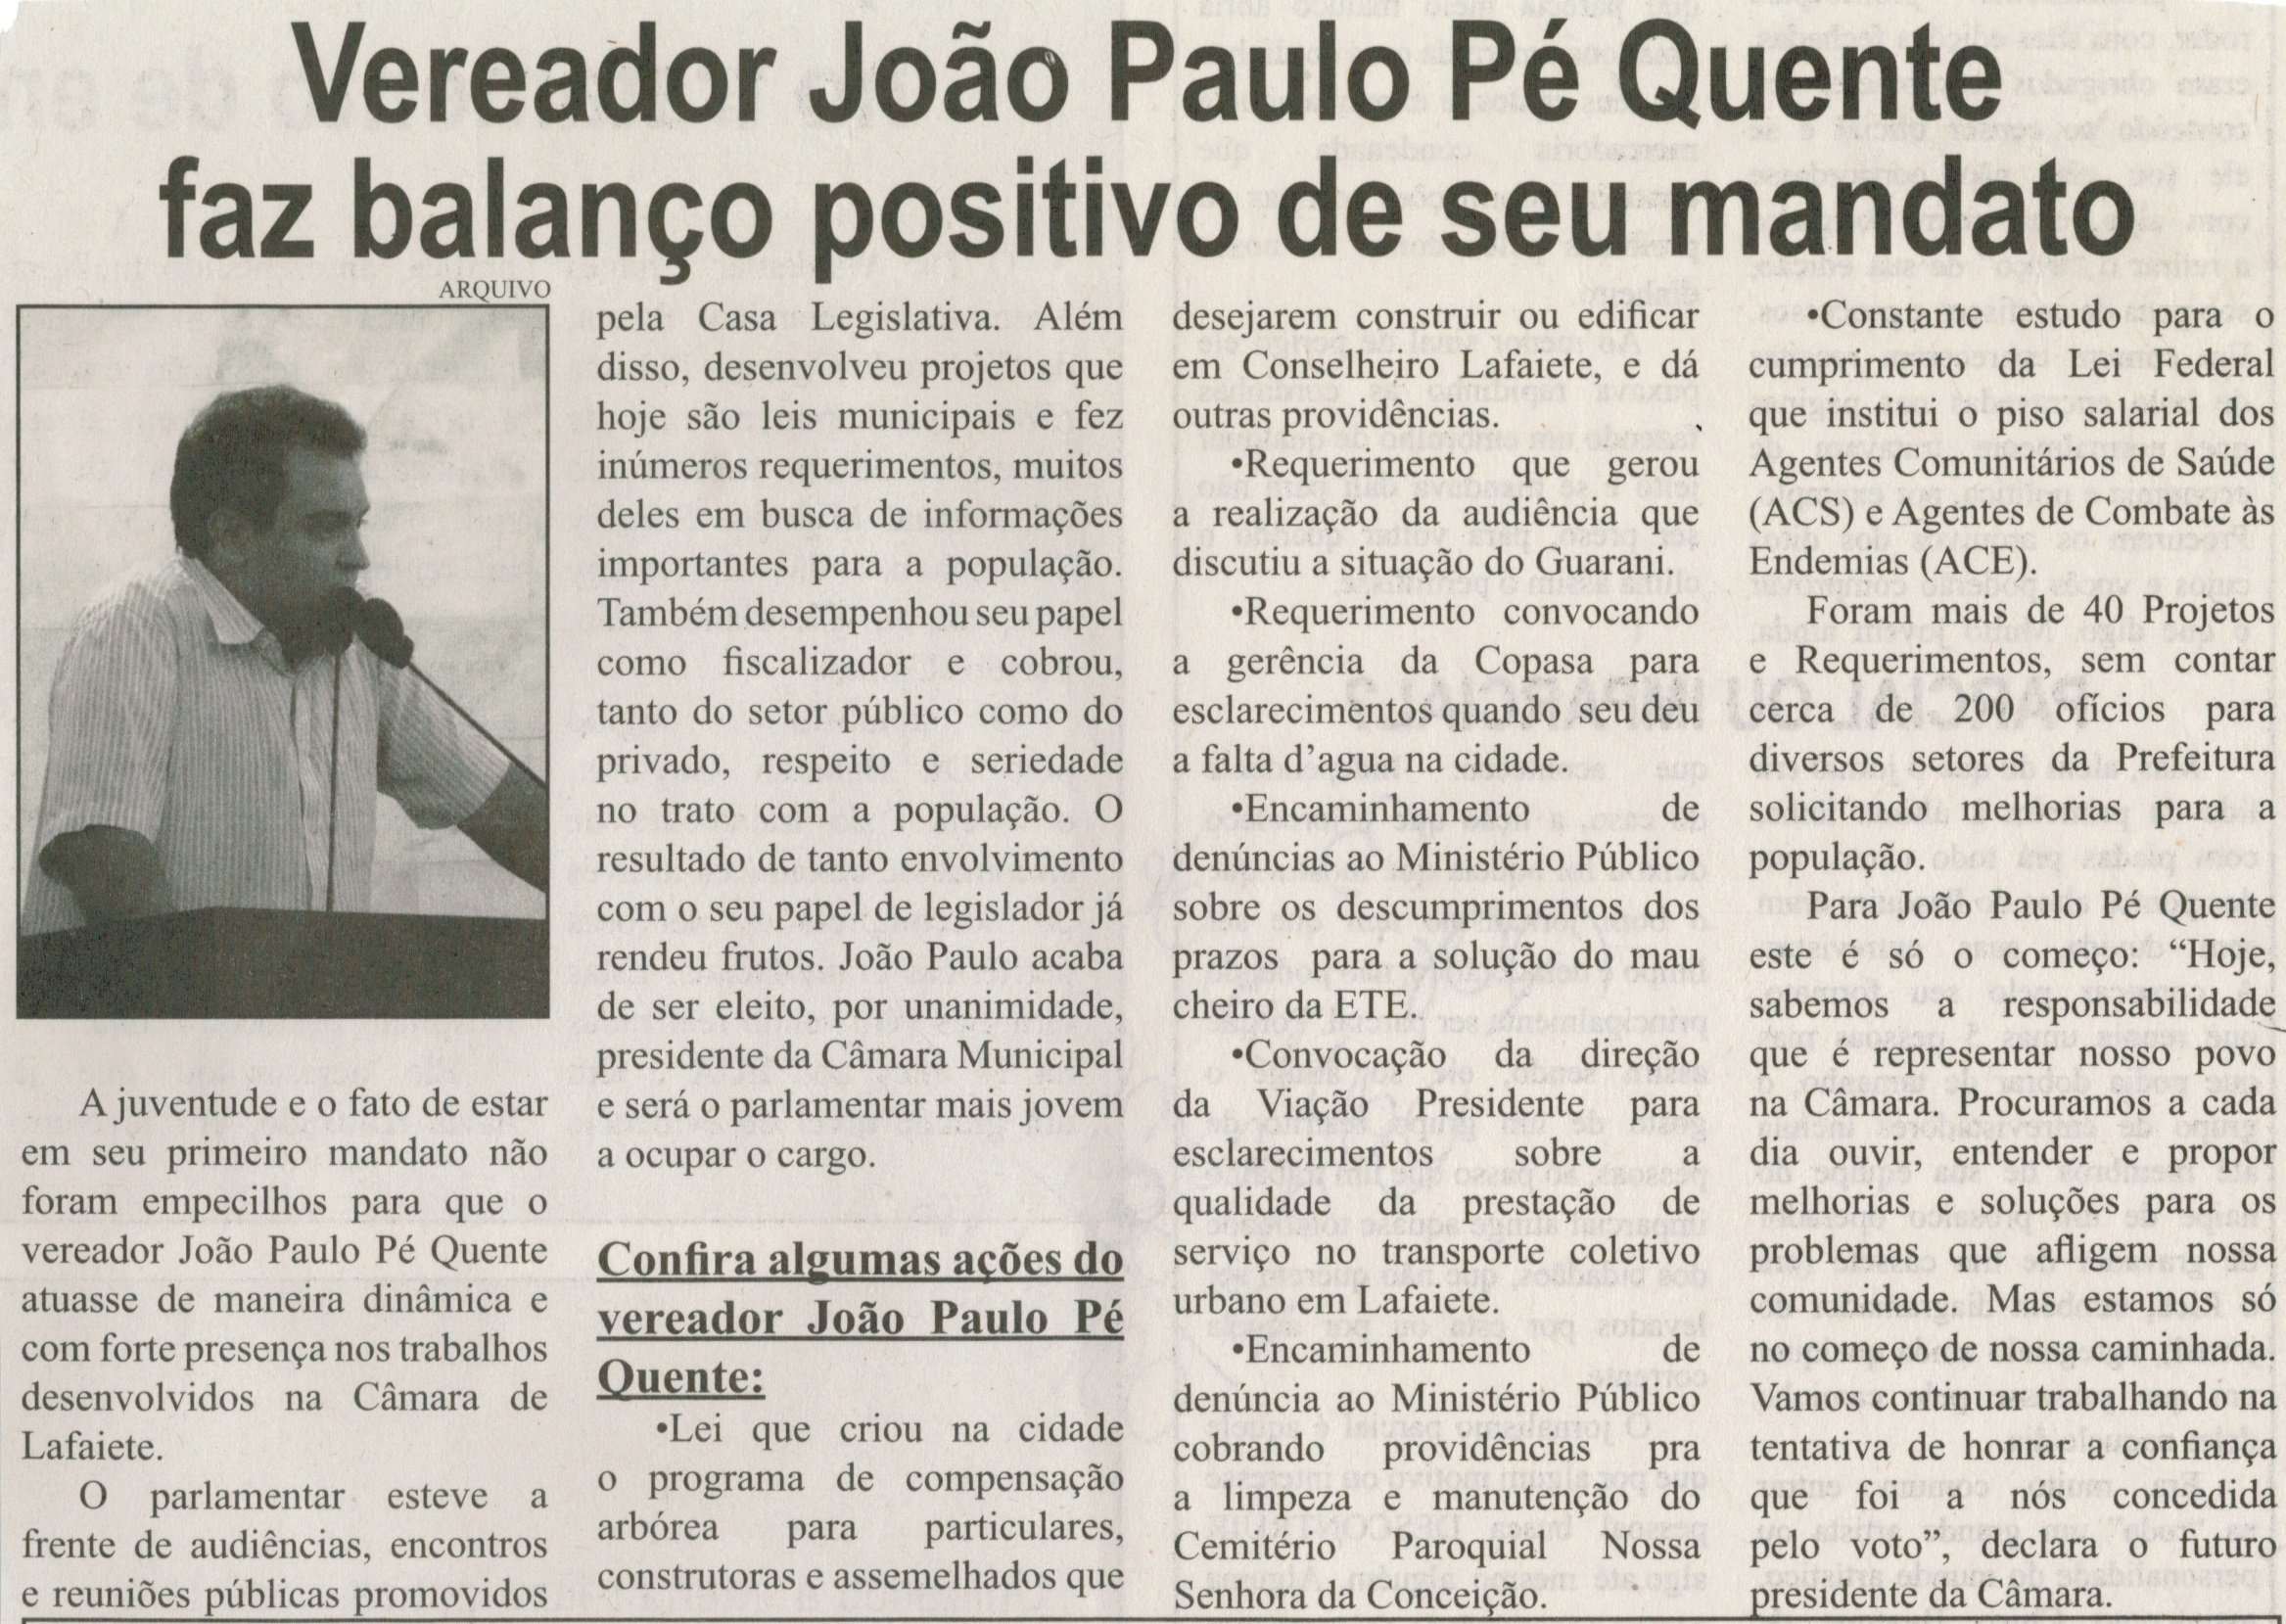 Vereador João Paulo Pé Quente faz balanço positivo de seu mandato. Correio de Minas, Conselheiro Lafaiete,  09 jan. 2015, p. 3.